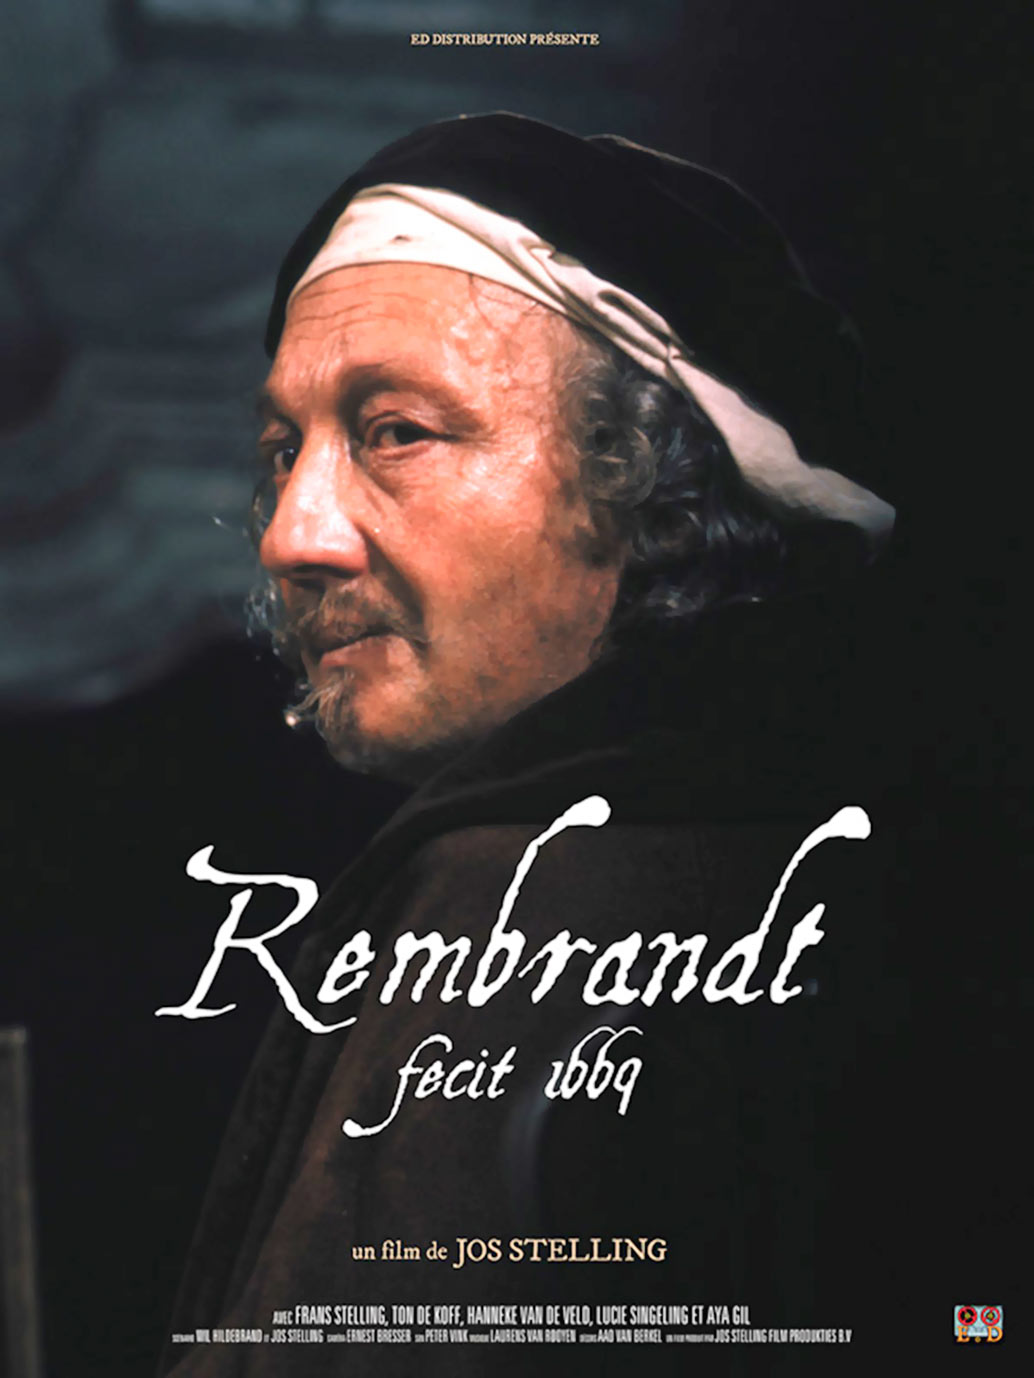 Rembrandt-Fecit